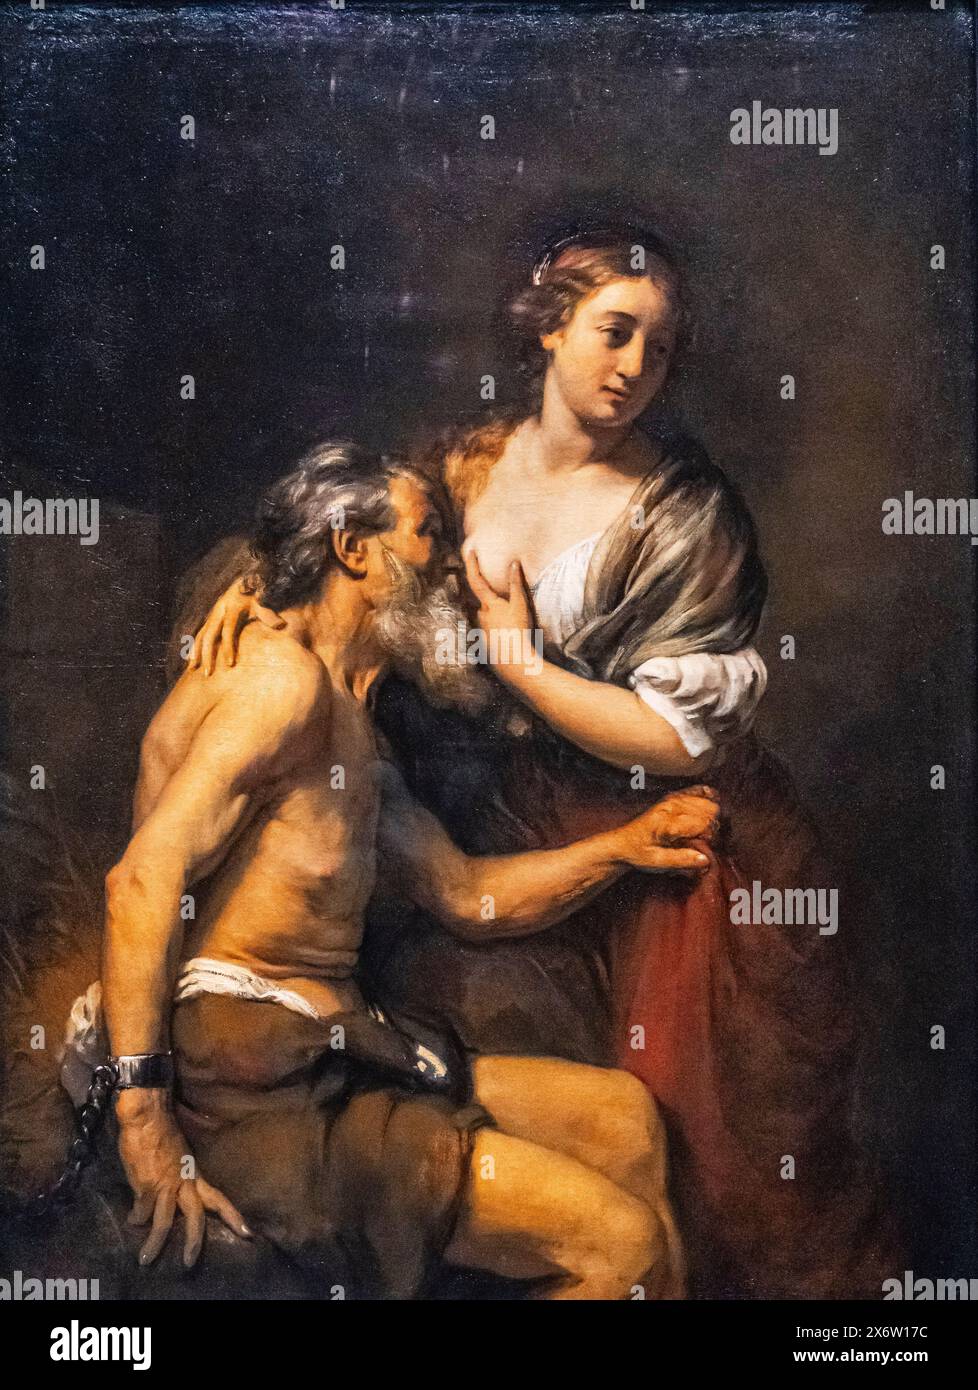 Cimon und Pero, AT. Willlem Drost, Öl auf Leinwand, 1656-57, Amsterdam, Niederlande. Stockfoto